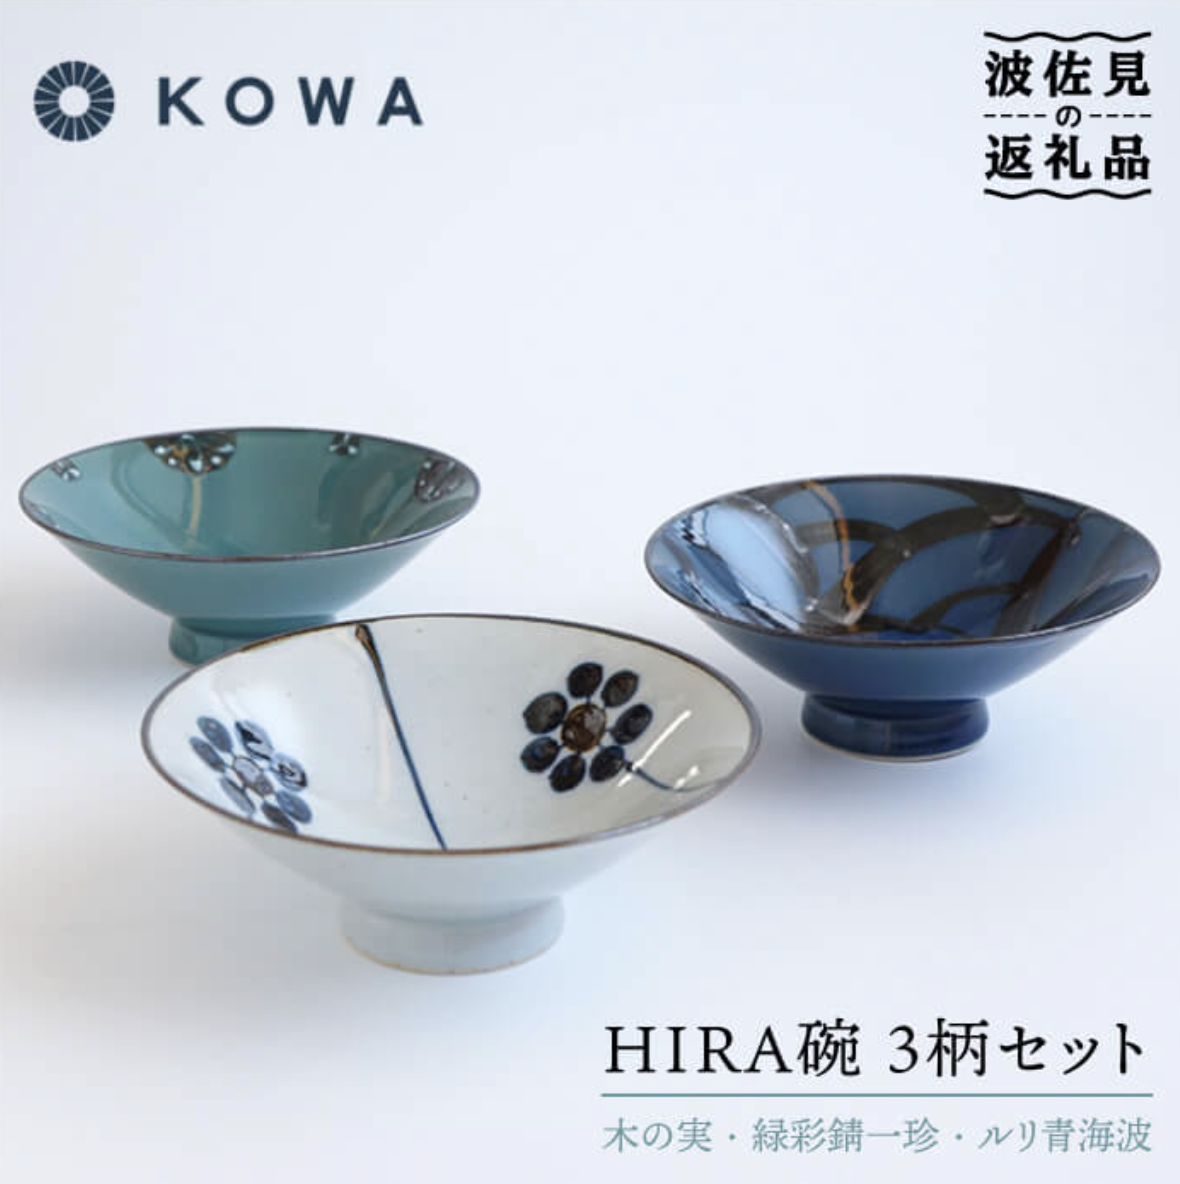 【波佐見焼】一誠陶器 HIRA碗 3柄セット 茶碗 食器 皿 【光和陶器】 イメージ